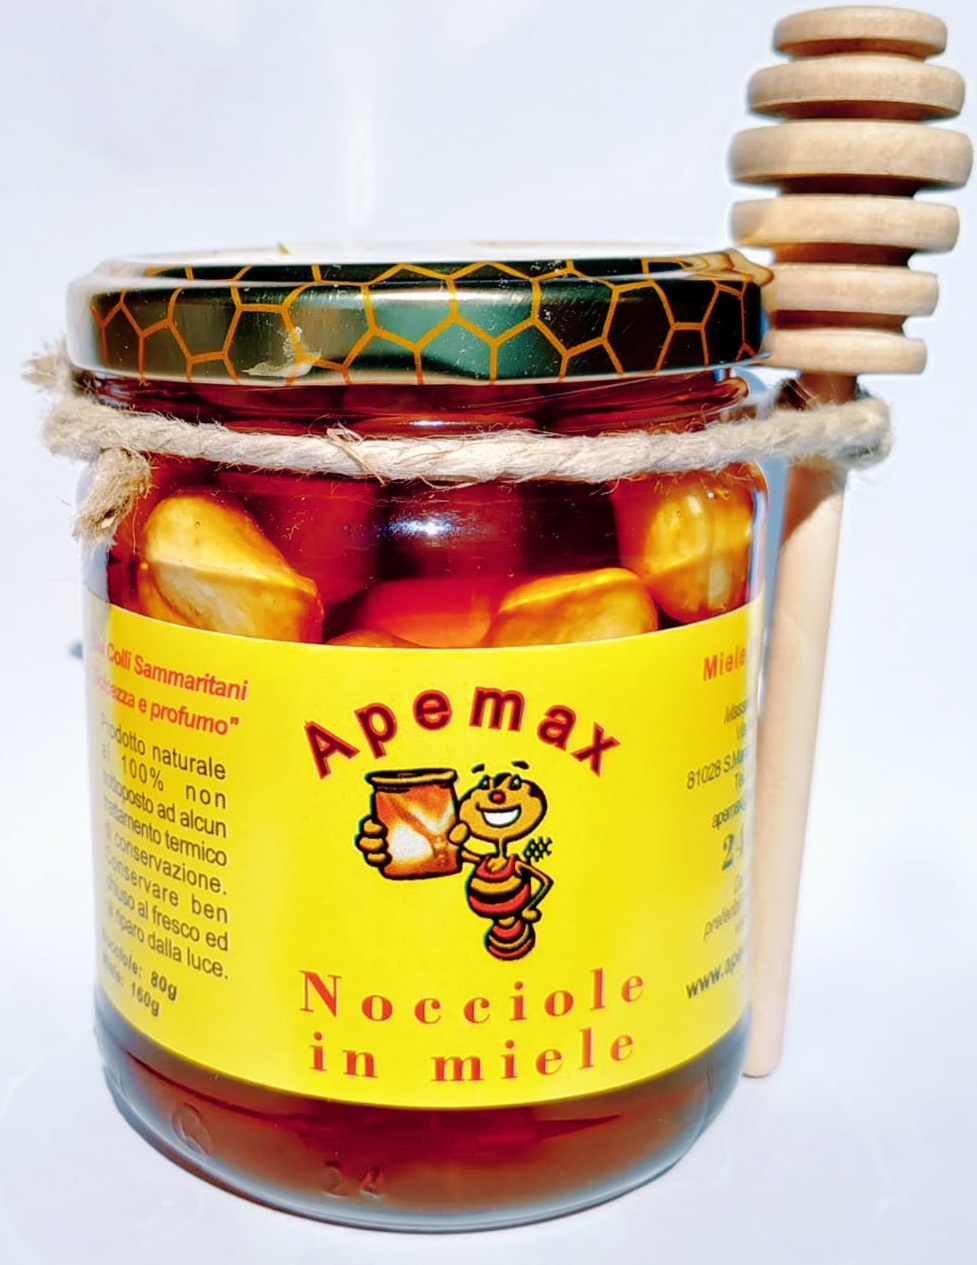 Nocciole  in miele, Miele, Campania, Prodotti tipici, vendita miele online, cucina, cibo, apicoltura, api